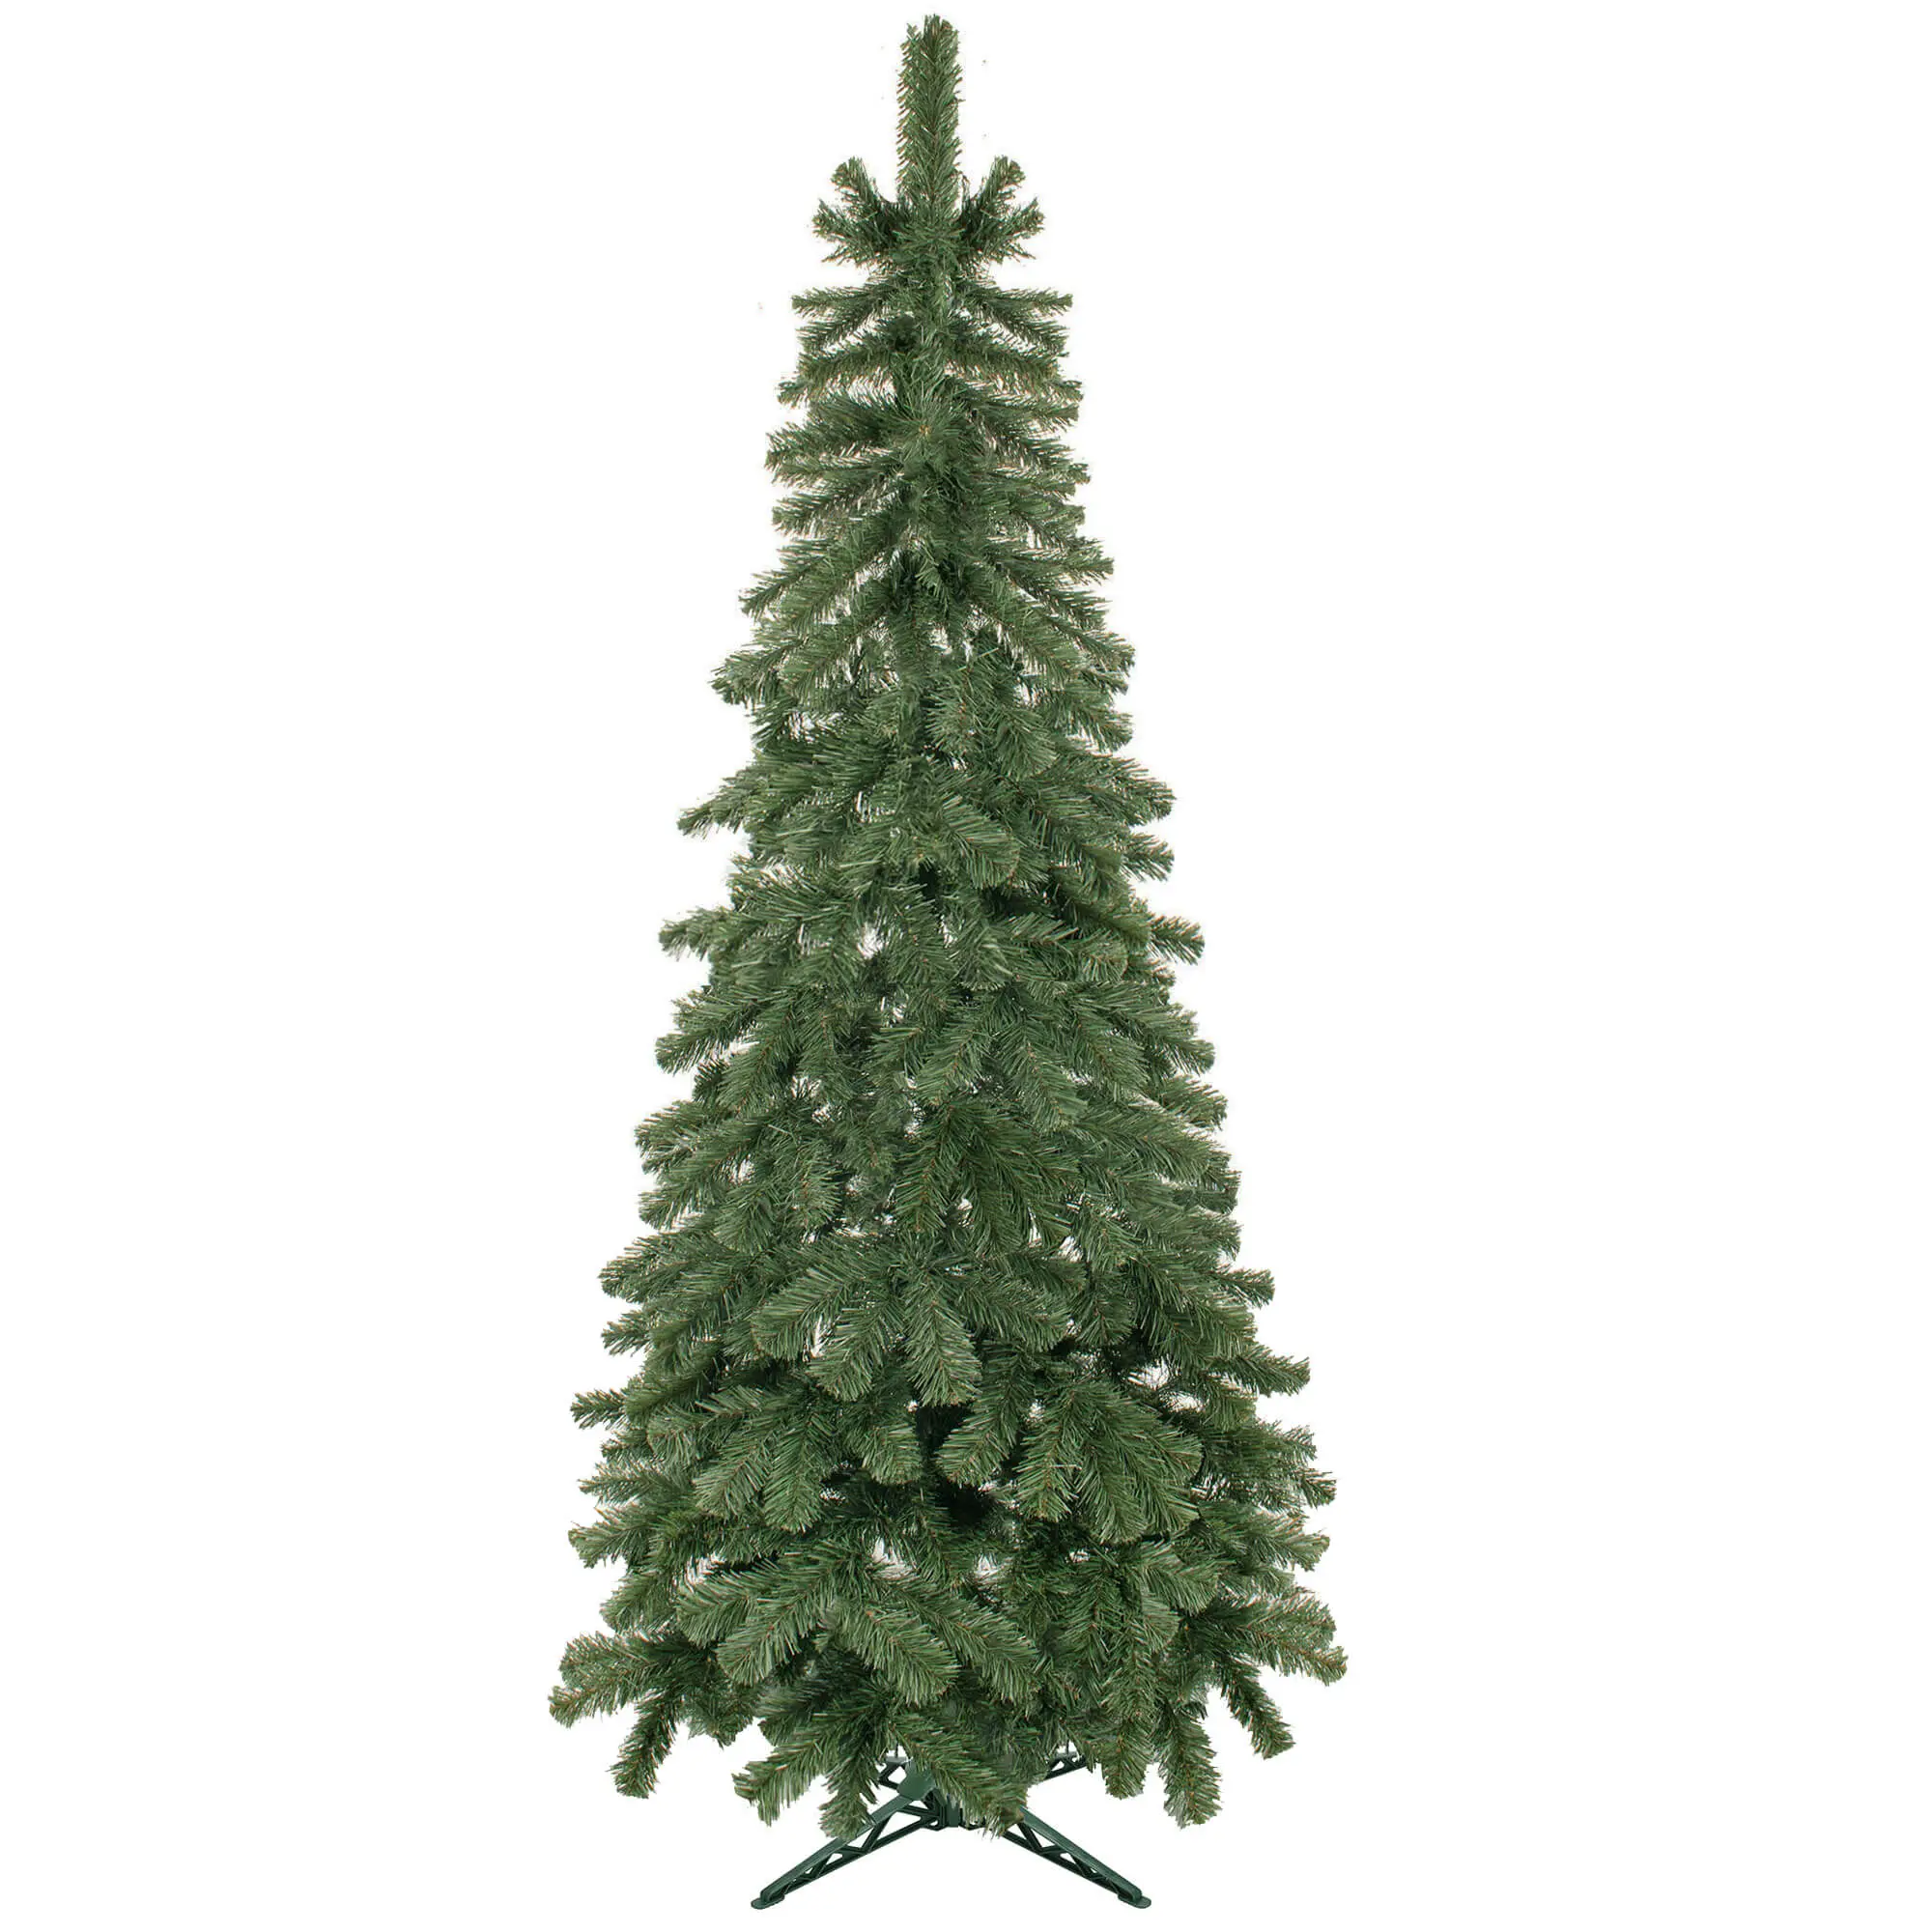 K眉nstlicher Weihnachtsbaum 180 cm